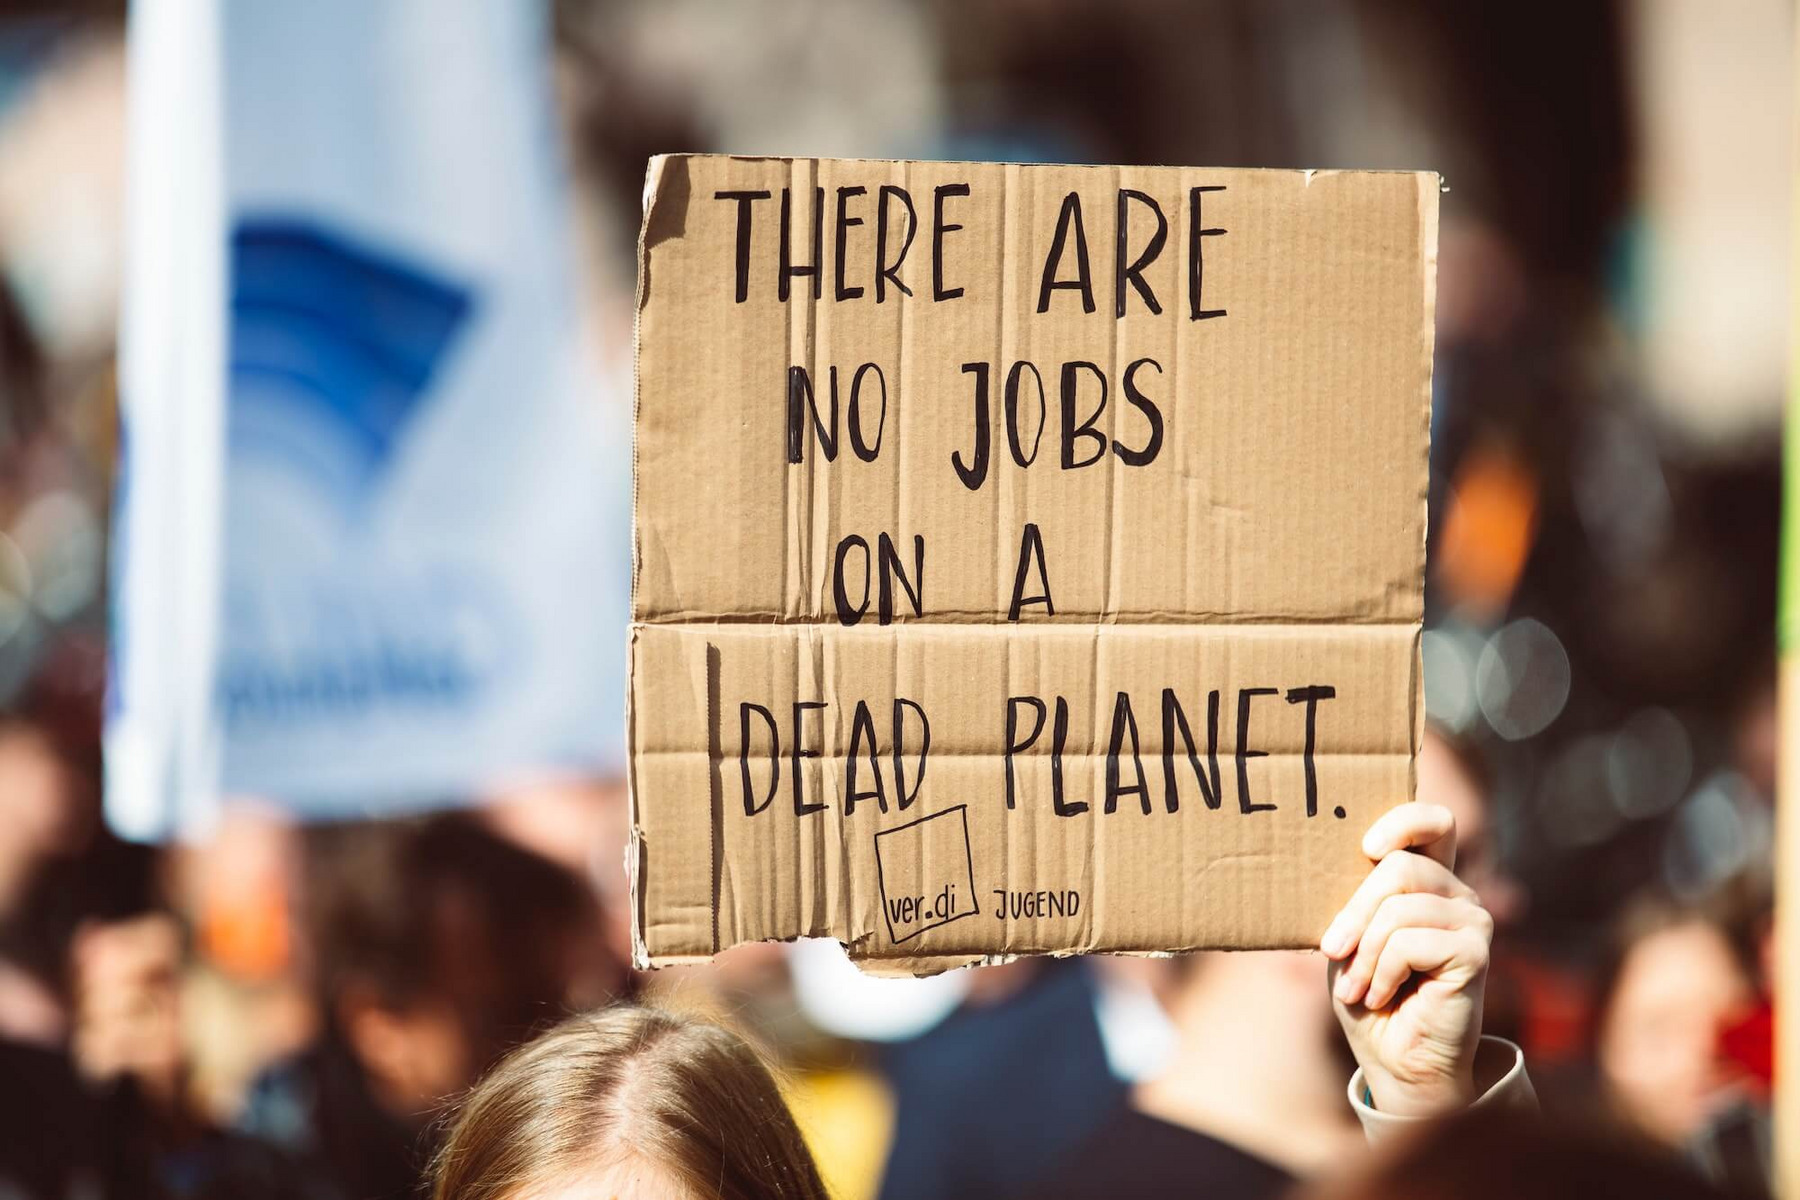 Klimaprotest: Ein:e Demonstrant:in hält ein Schild hoch, auf dem steht "There are no jobs on a dead planet"